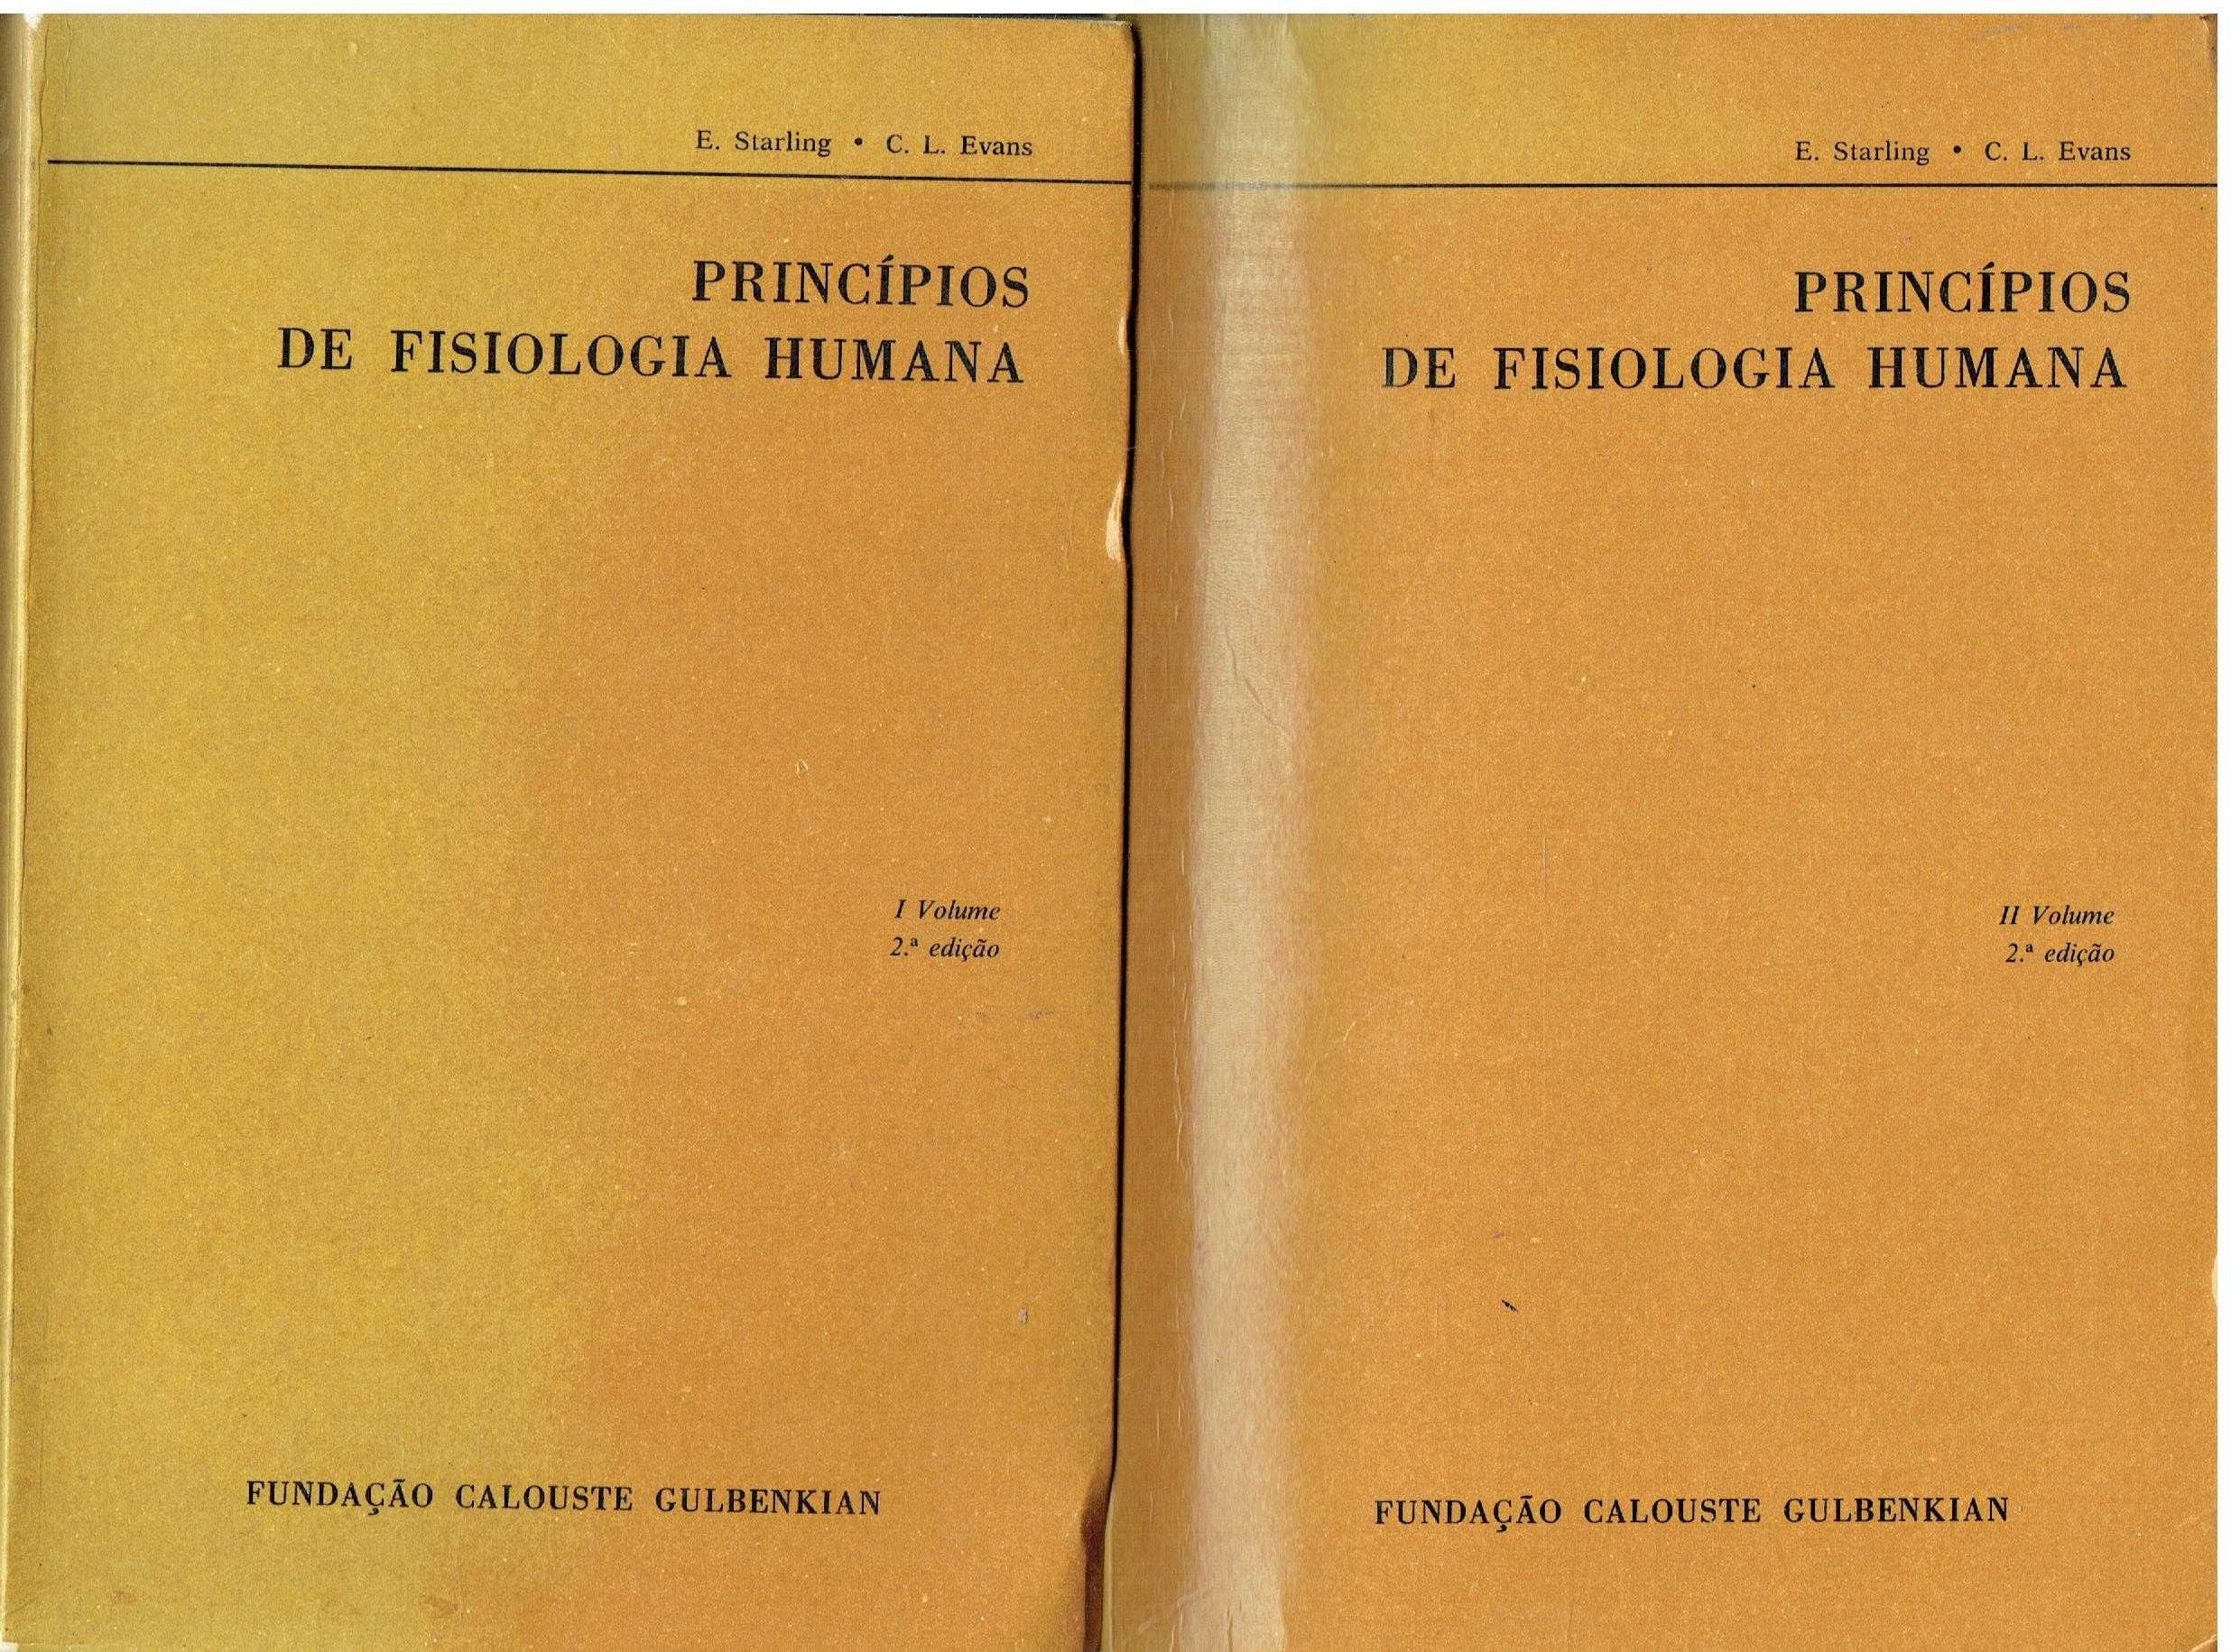 7453
	
Princípios de fisiologia humana - 2 vols